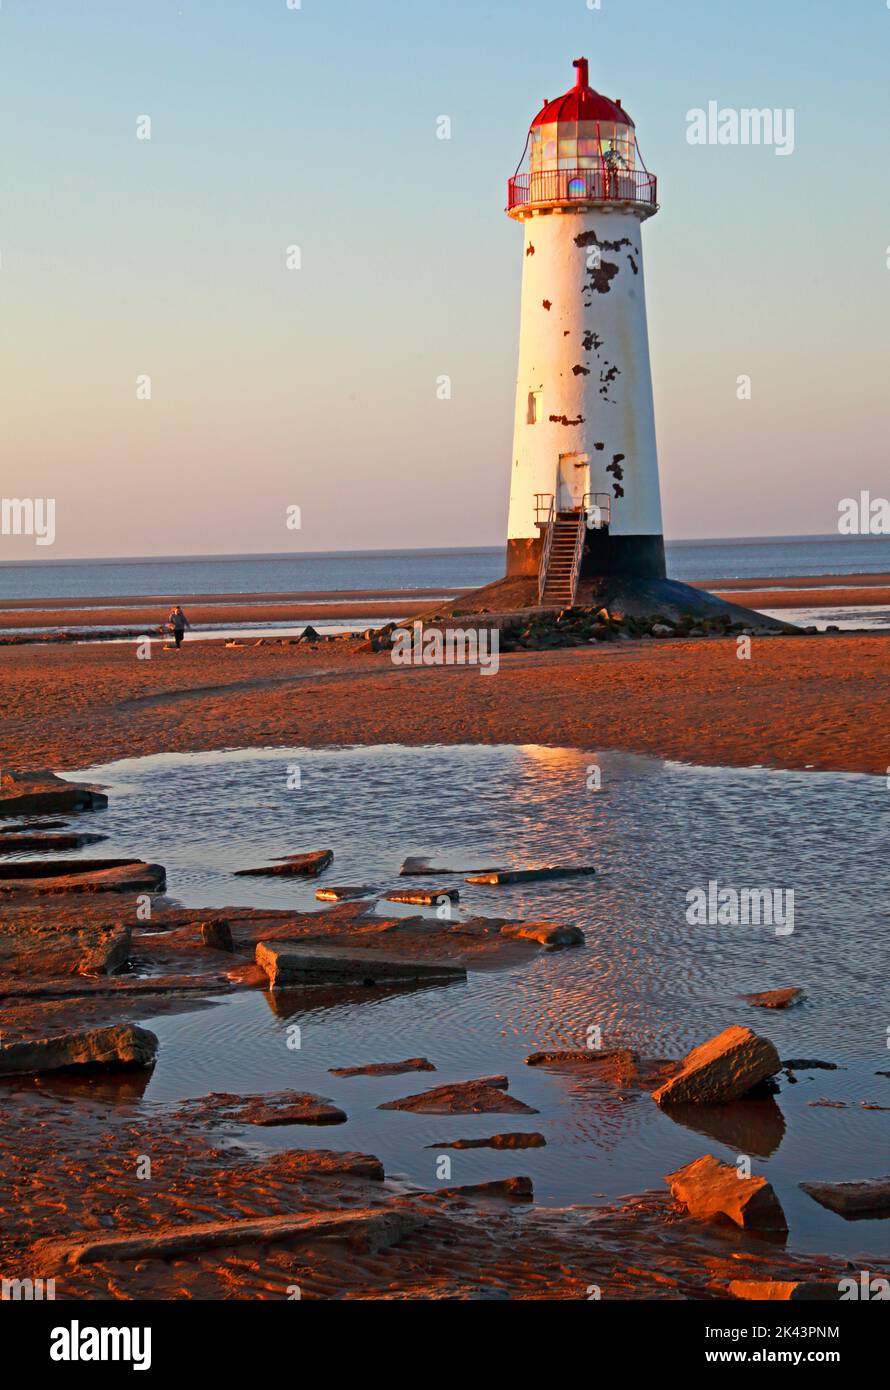 Point of Ayr Lighthouse, également connu sous le nom de Talacre Lighthouse, côte nord du pays de Galles, Royaume-Uni, CH8 9RD, au coucher du soleil en soirée Banque D'Images